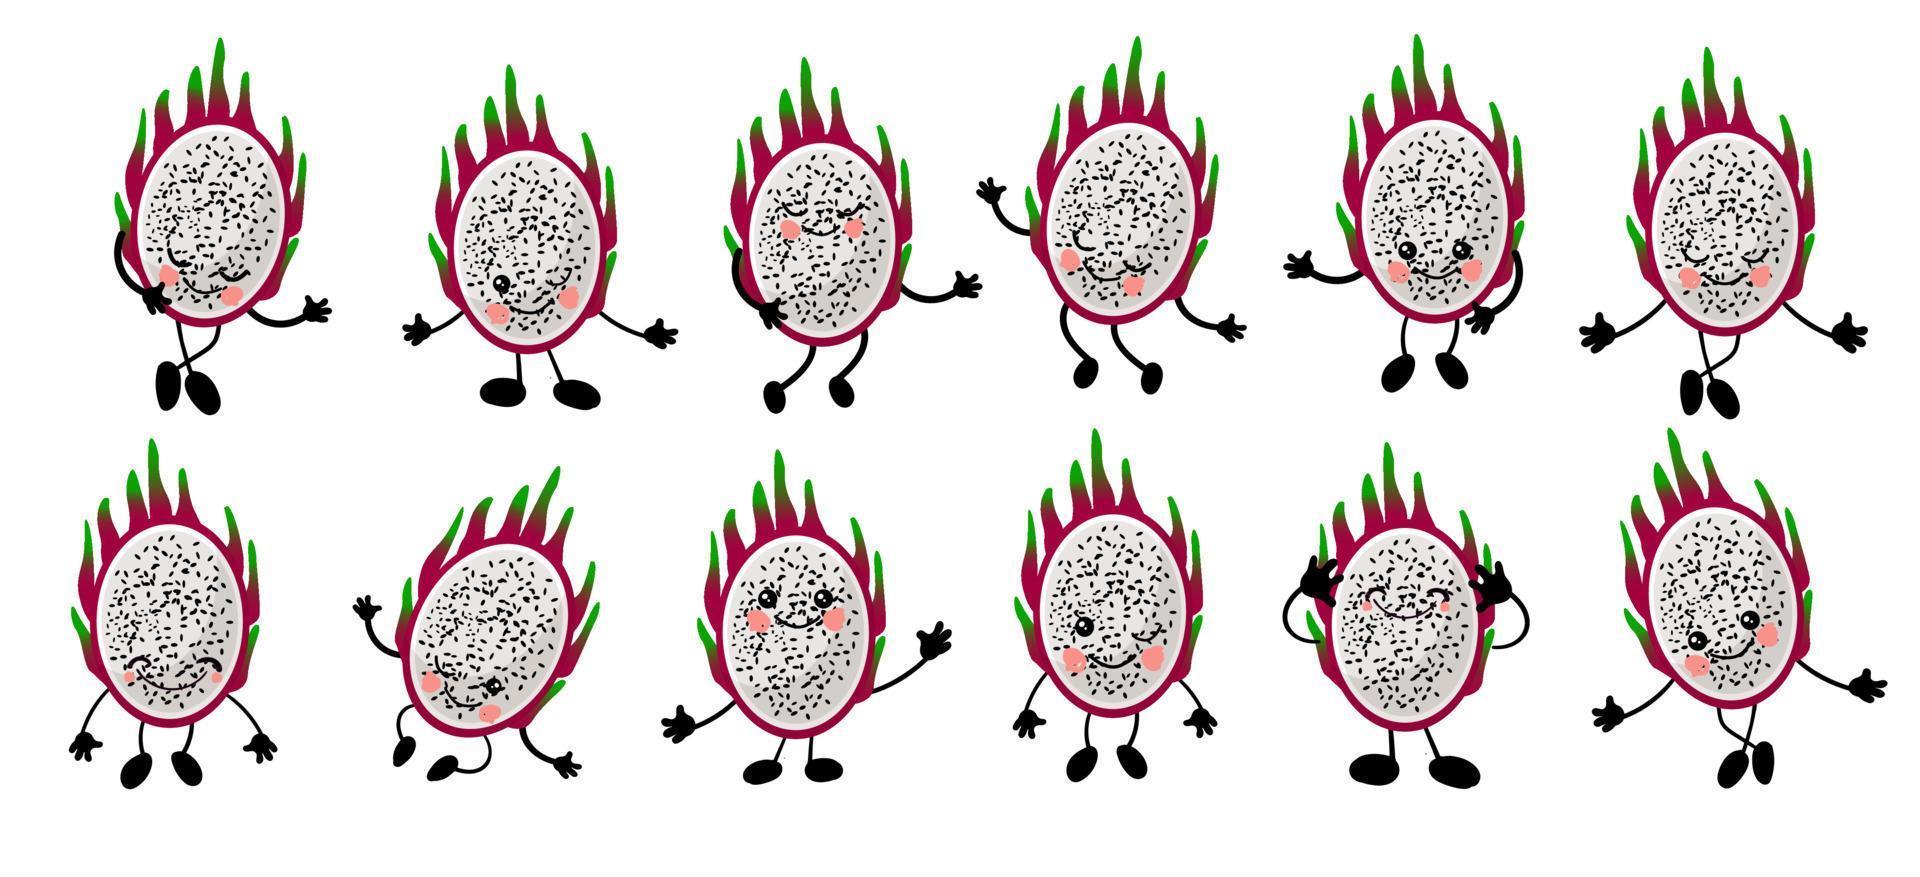 frutto del drago. pitaya. simpatico personaggio allegro con braccia e gambe. insieme di frutti isolati su sfondo bianco .. vettore